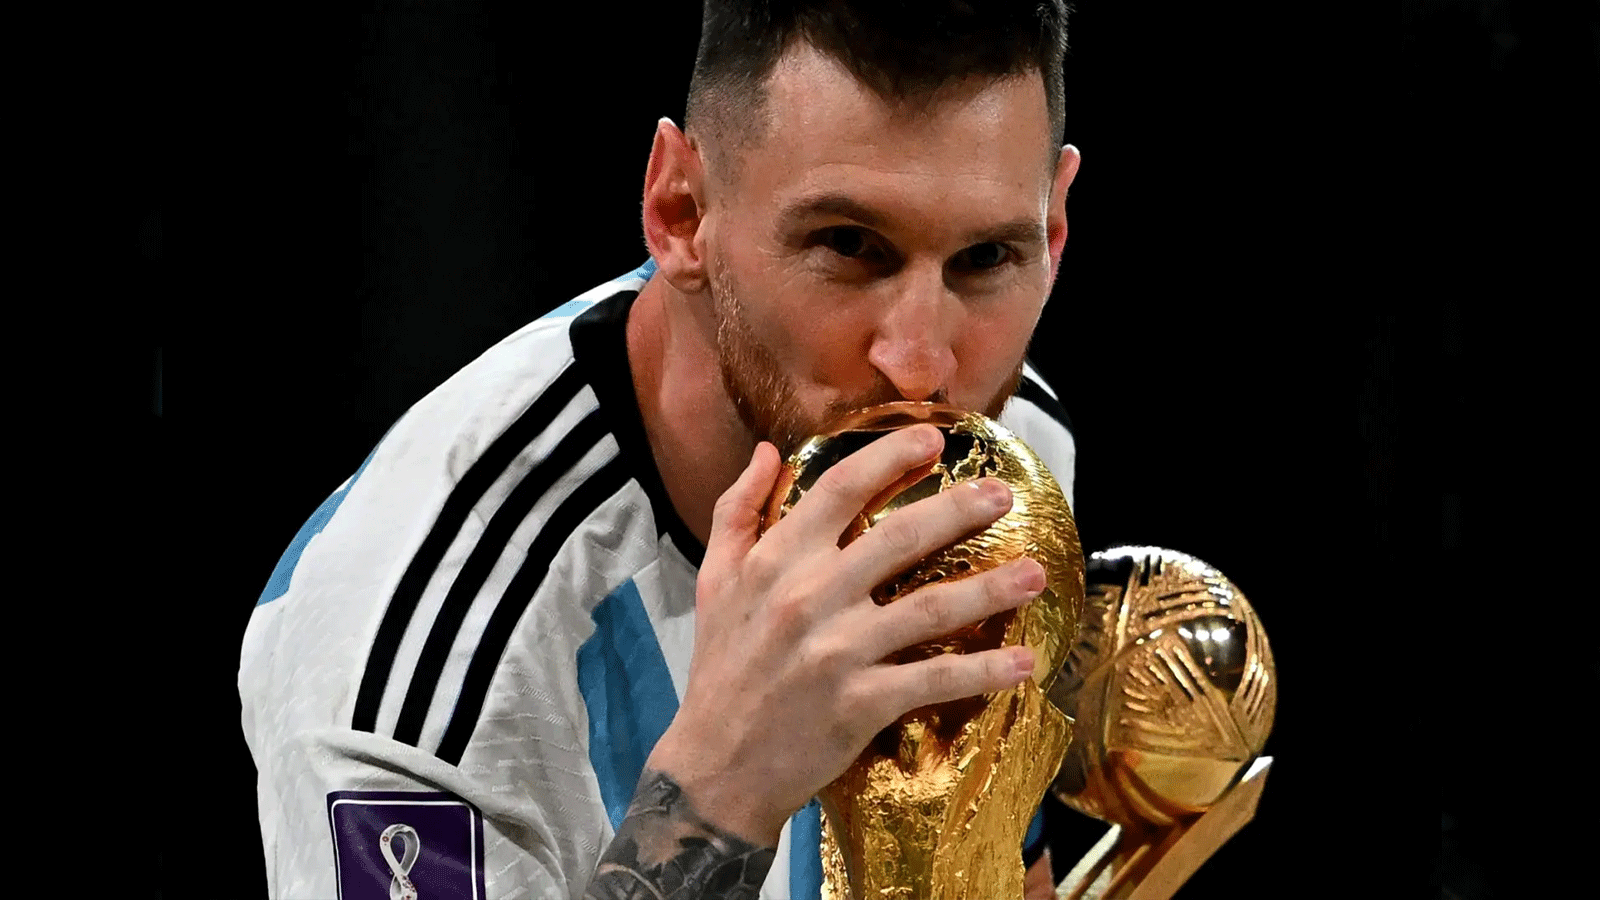 النجم الأرجنتيني ليونيل ميسي يقبّل كأس العالم بعيد فوزه في مونديال قطر